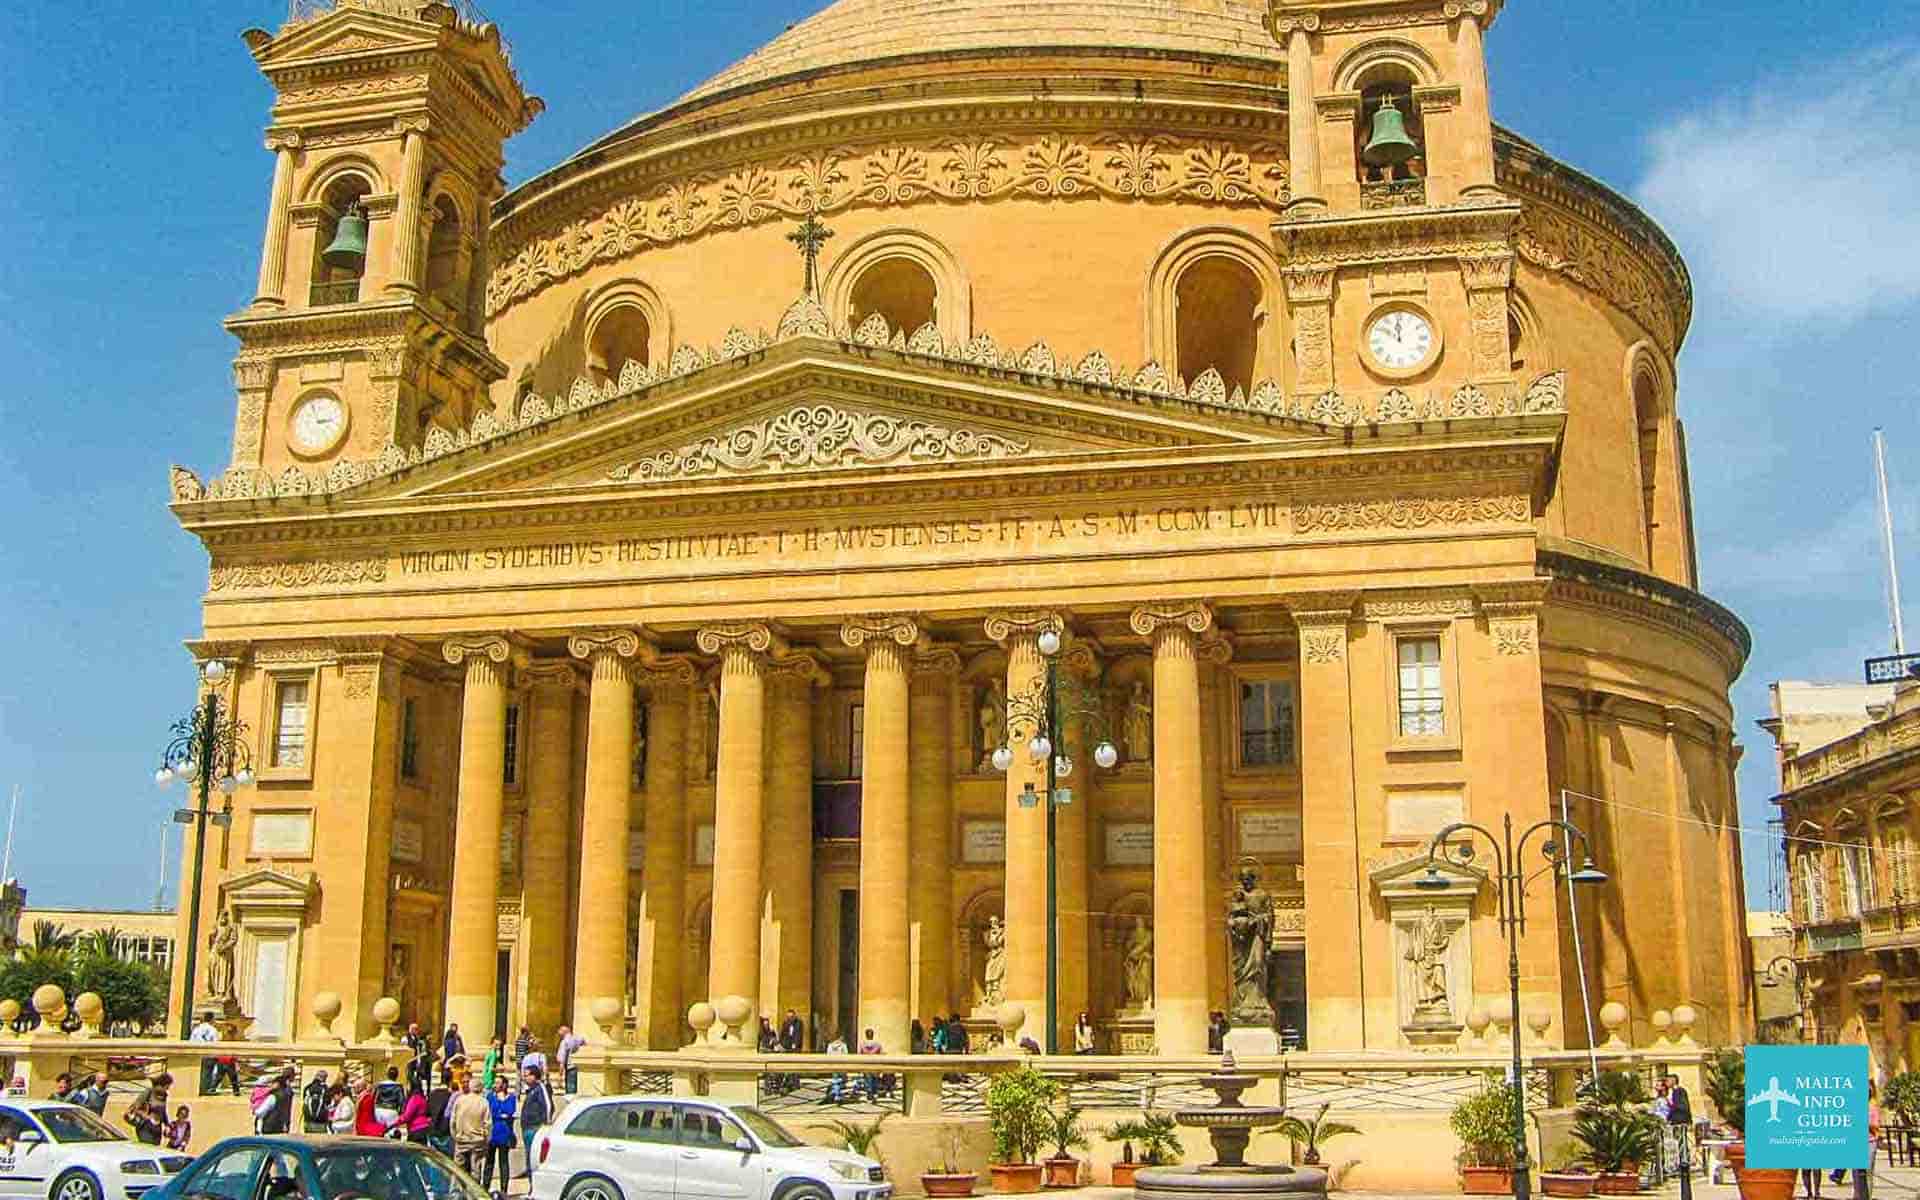 The Mosta Dome church Malta.